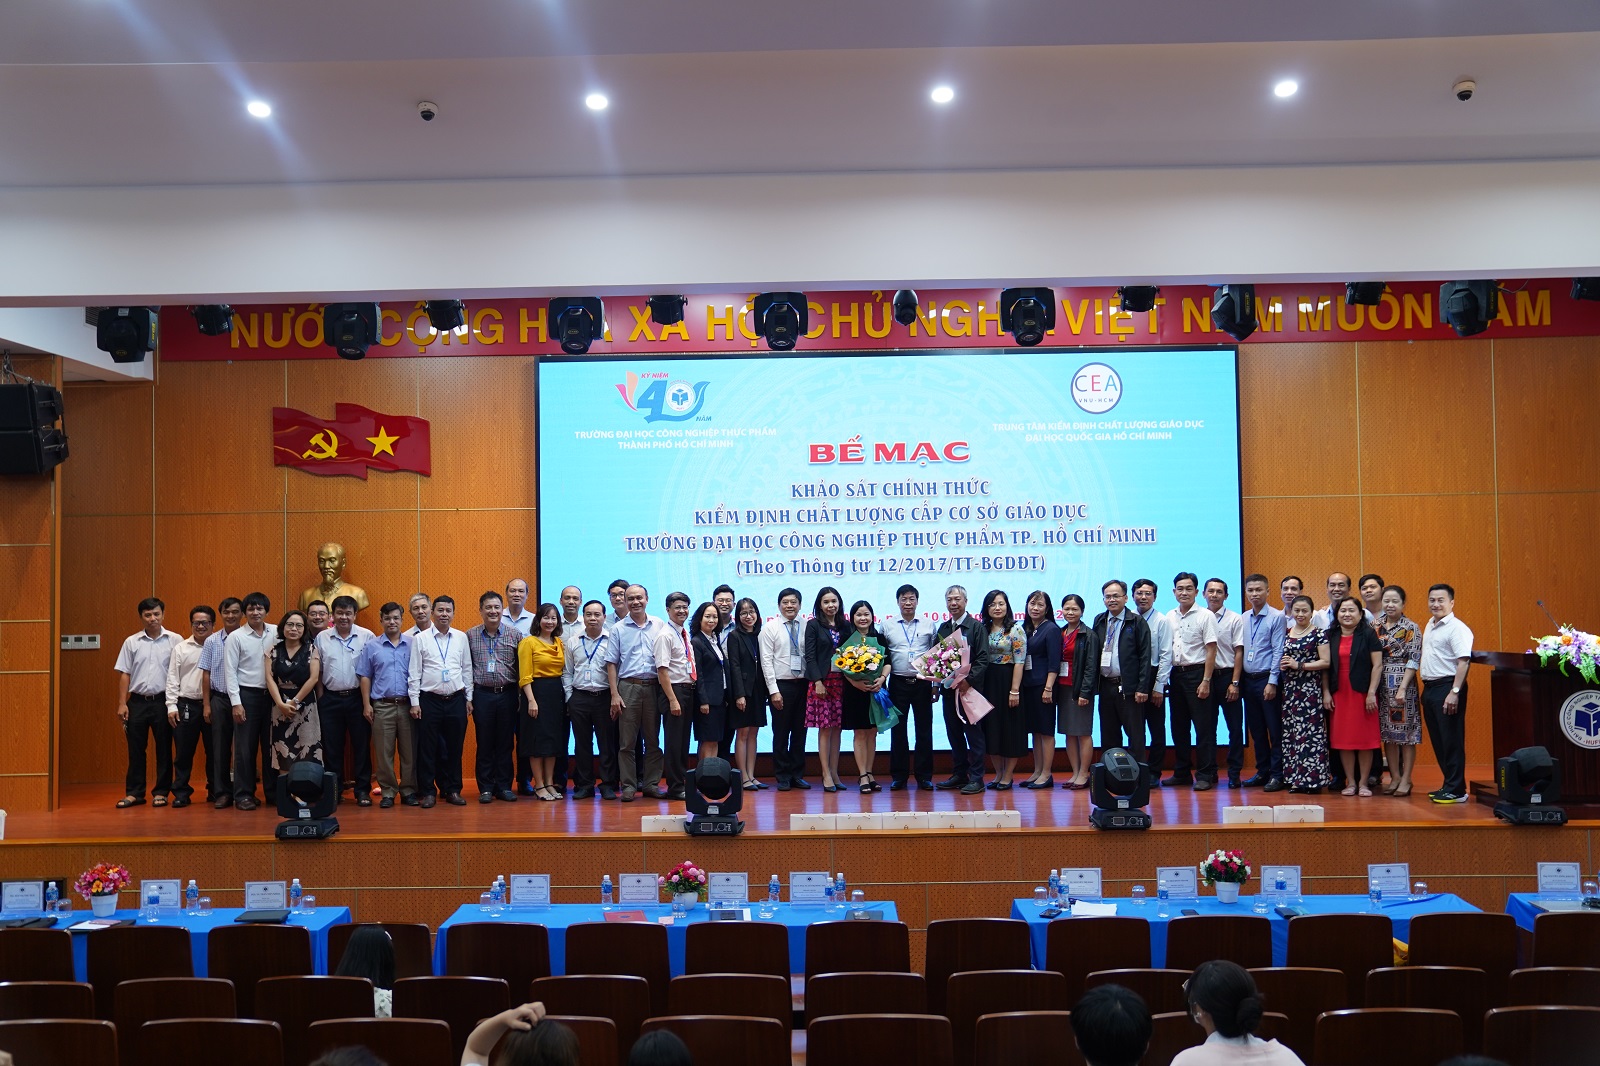 Bế mạc đợt khảo sát chính thức kiểm định chất lượng cấp cơ sở giáo dục chu kỳ 2 tại Trường Đại học Công nghiệp Thực phẩm TP. Hồ Chí Minh